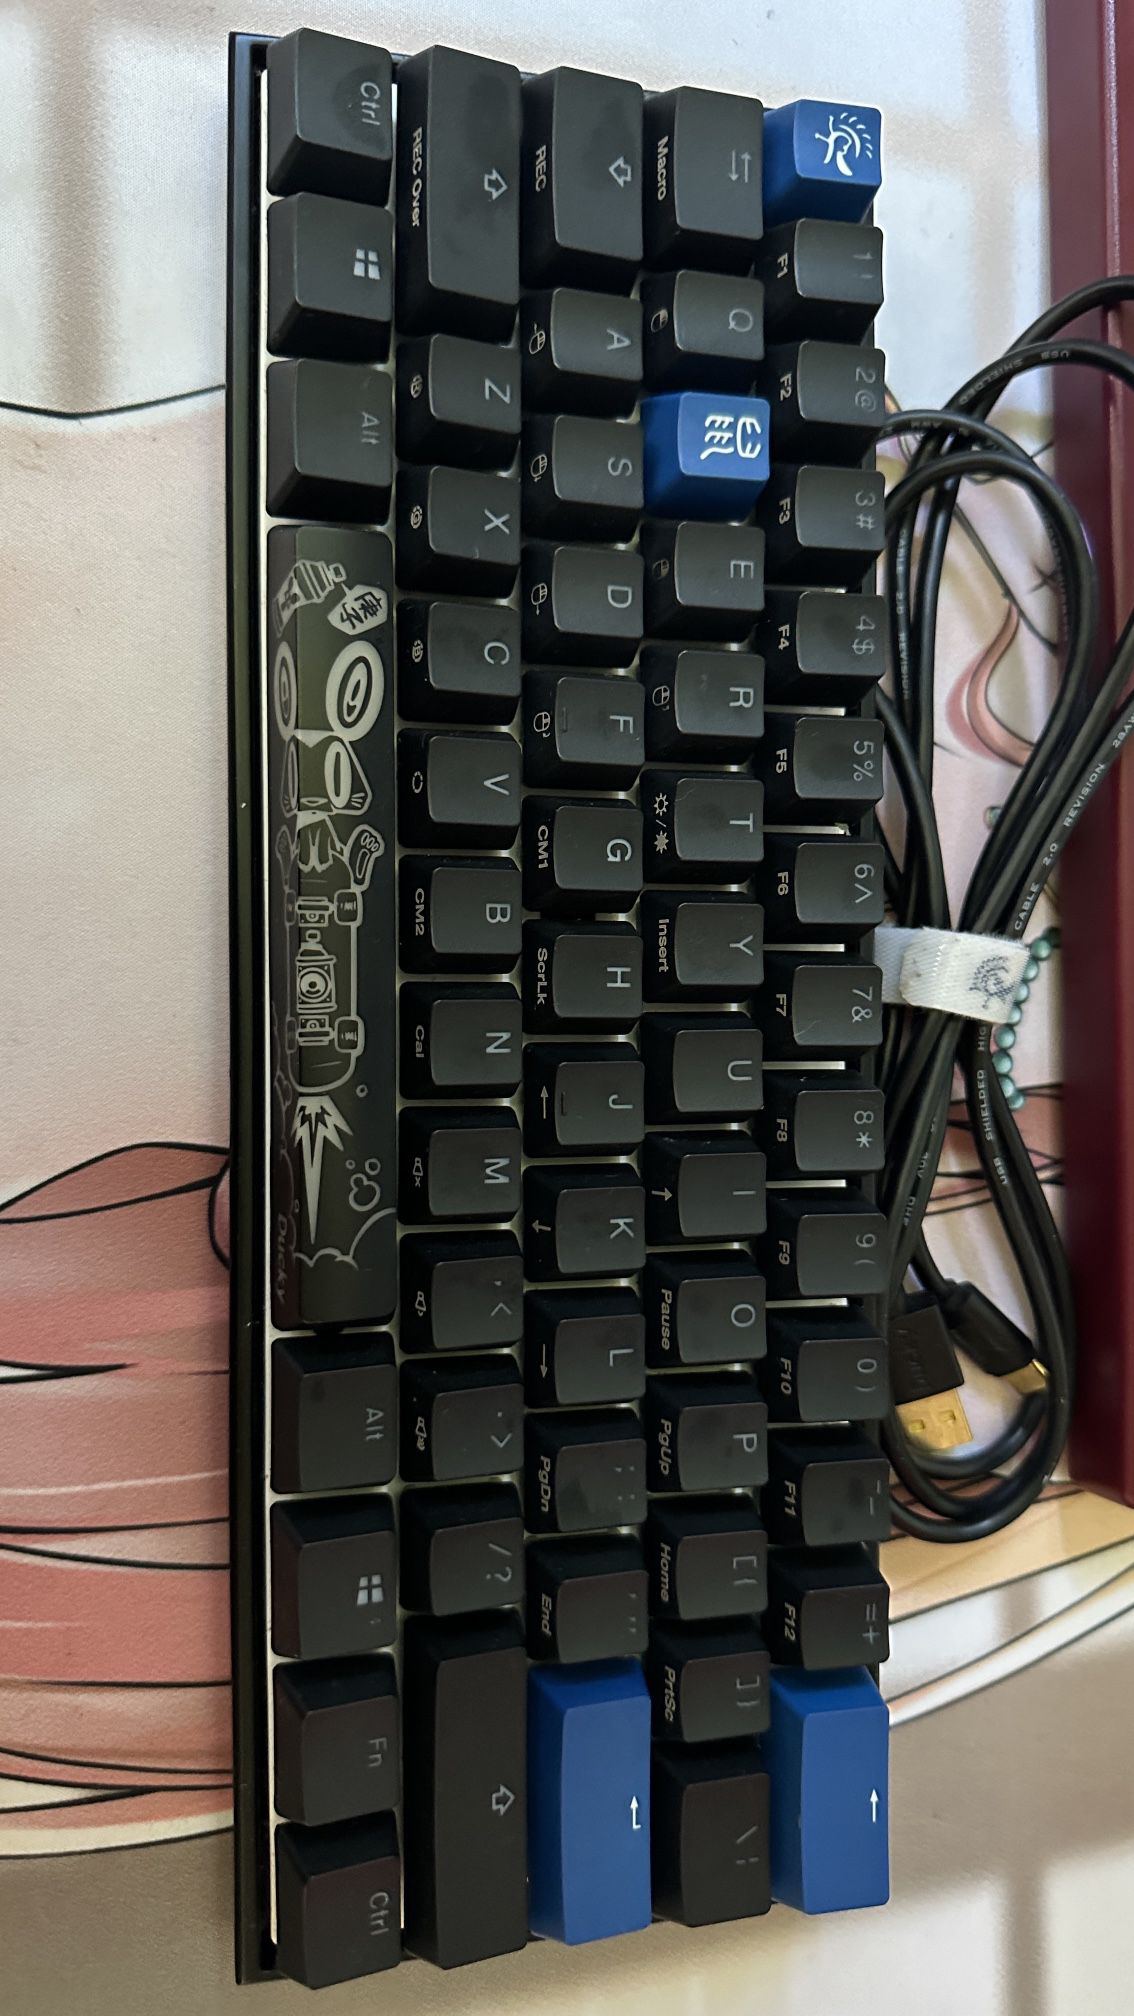 Ducky Mecha One Mini Keyboard